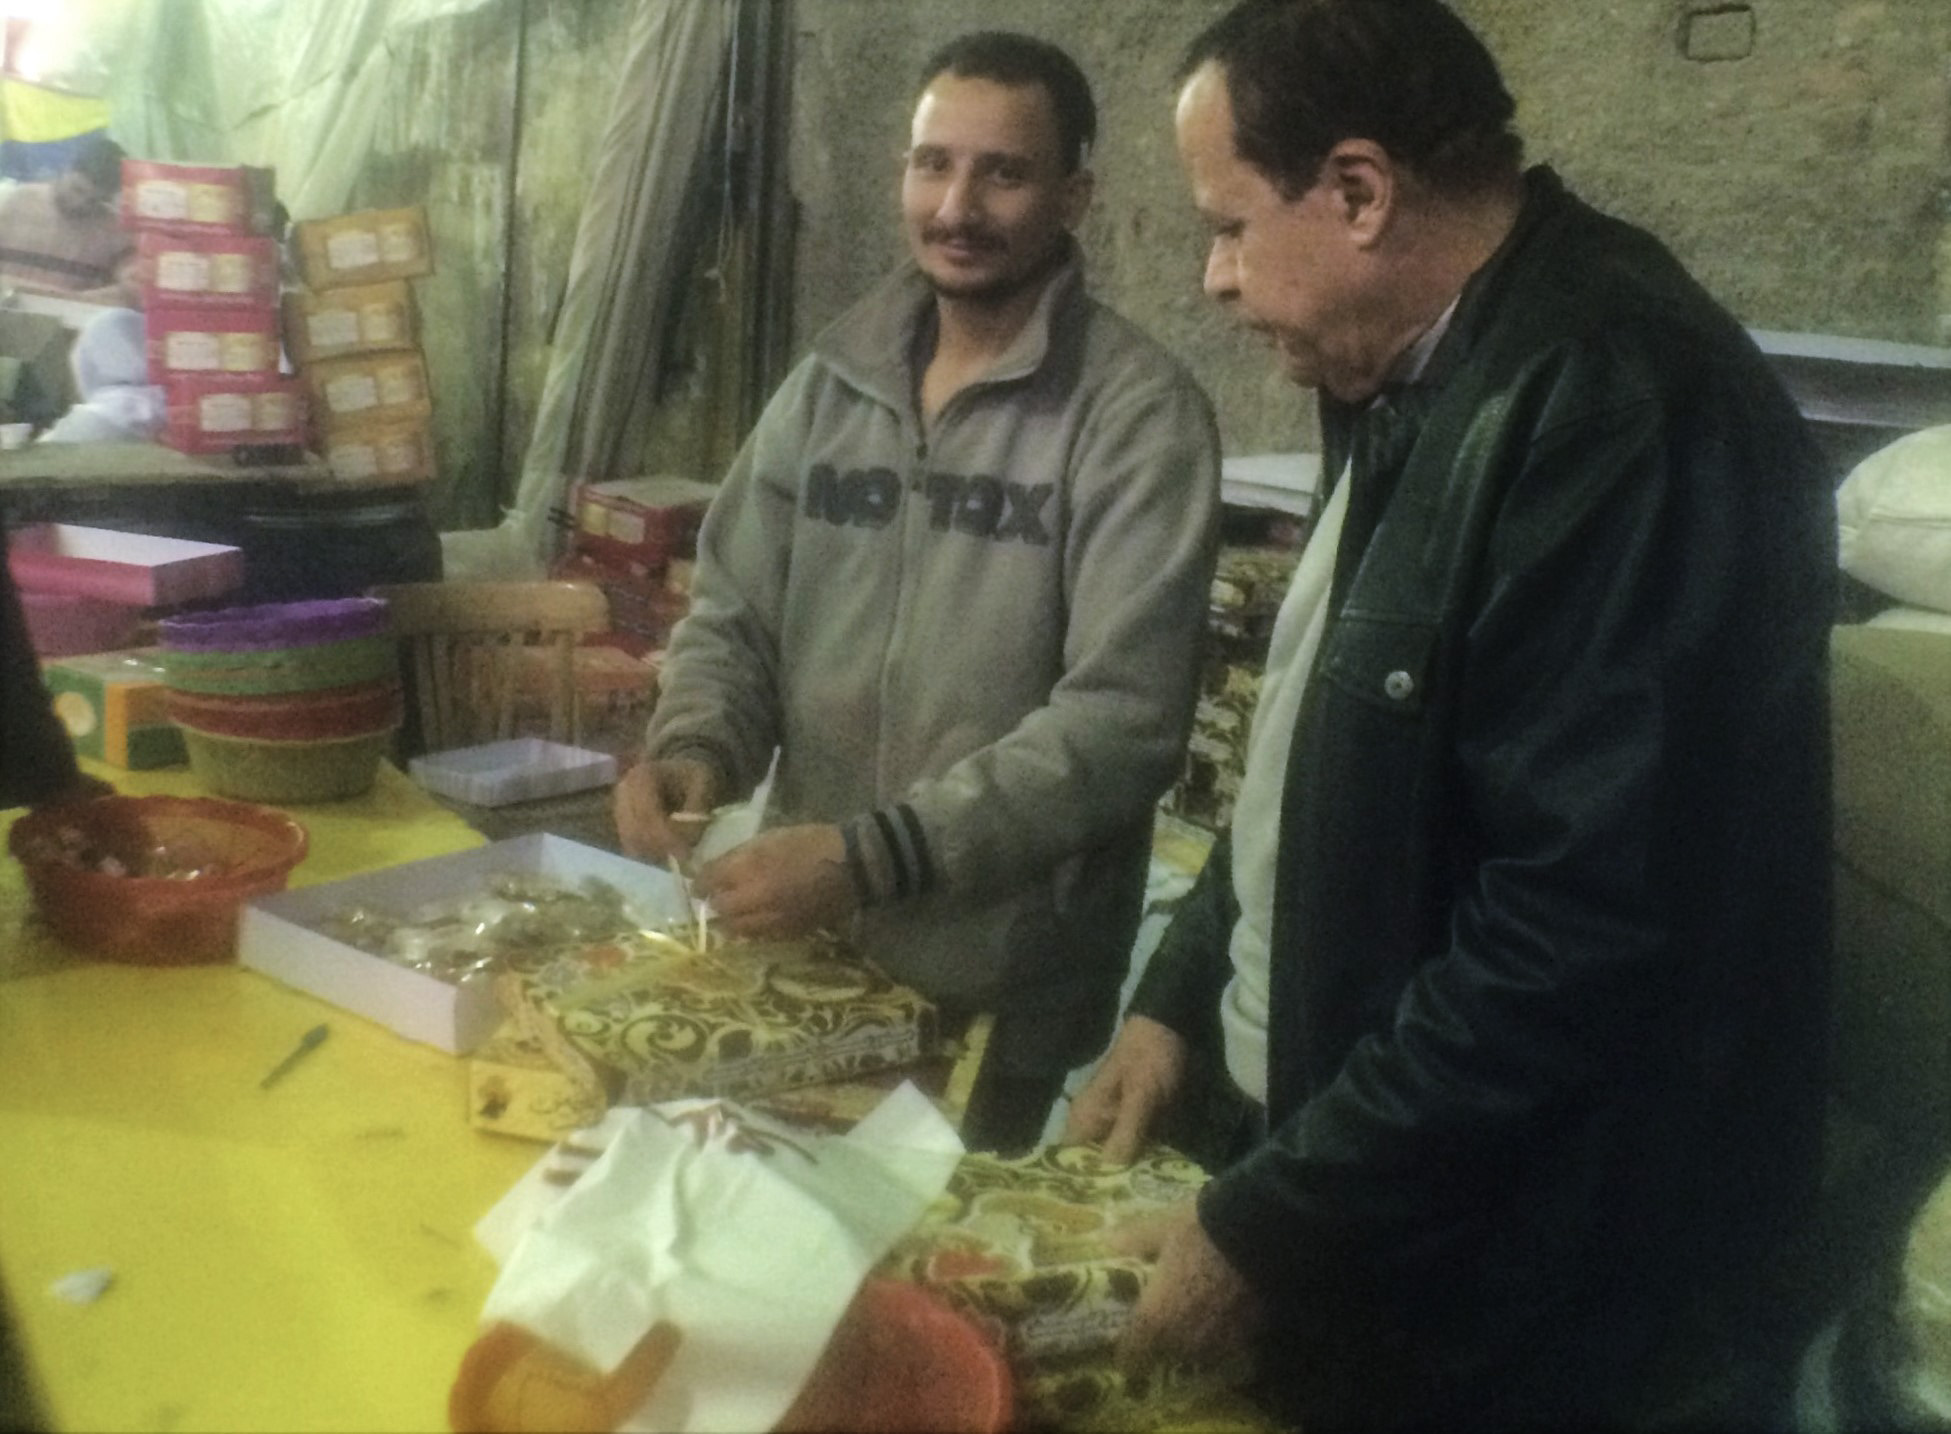 Packing el-Moulid sweets in Bein el-Harat Street. Phone photo by Nayrouz Talaat.